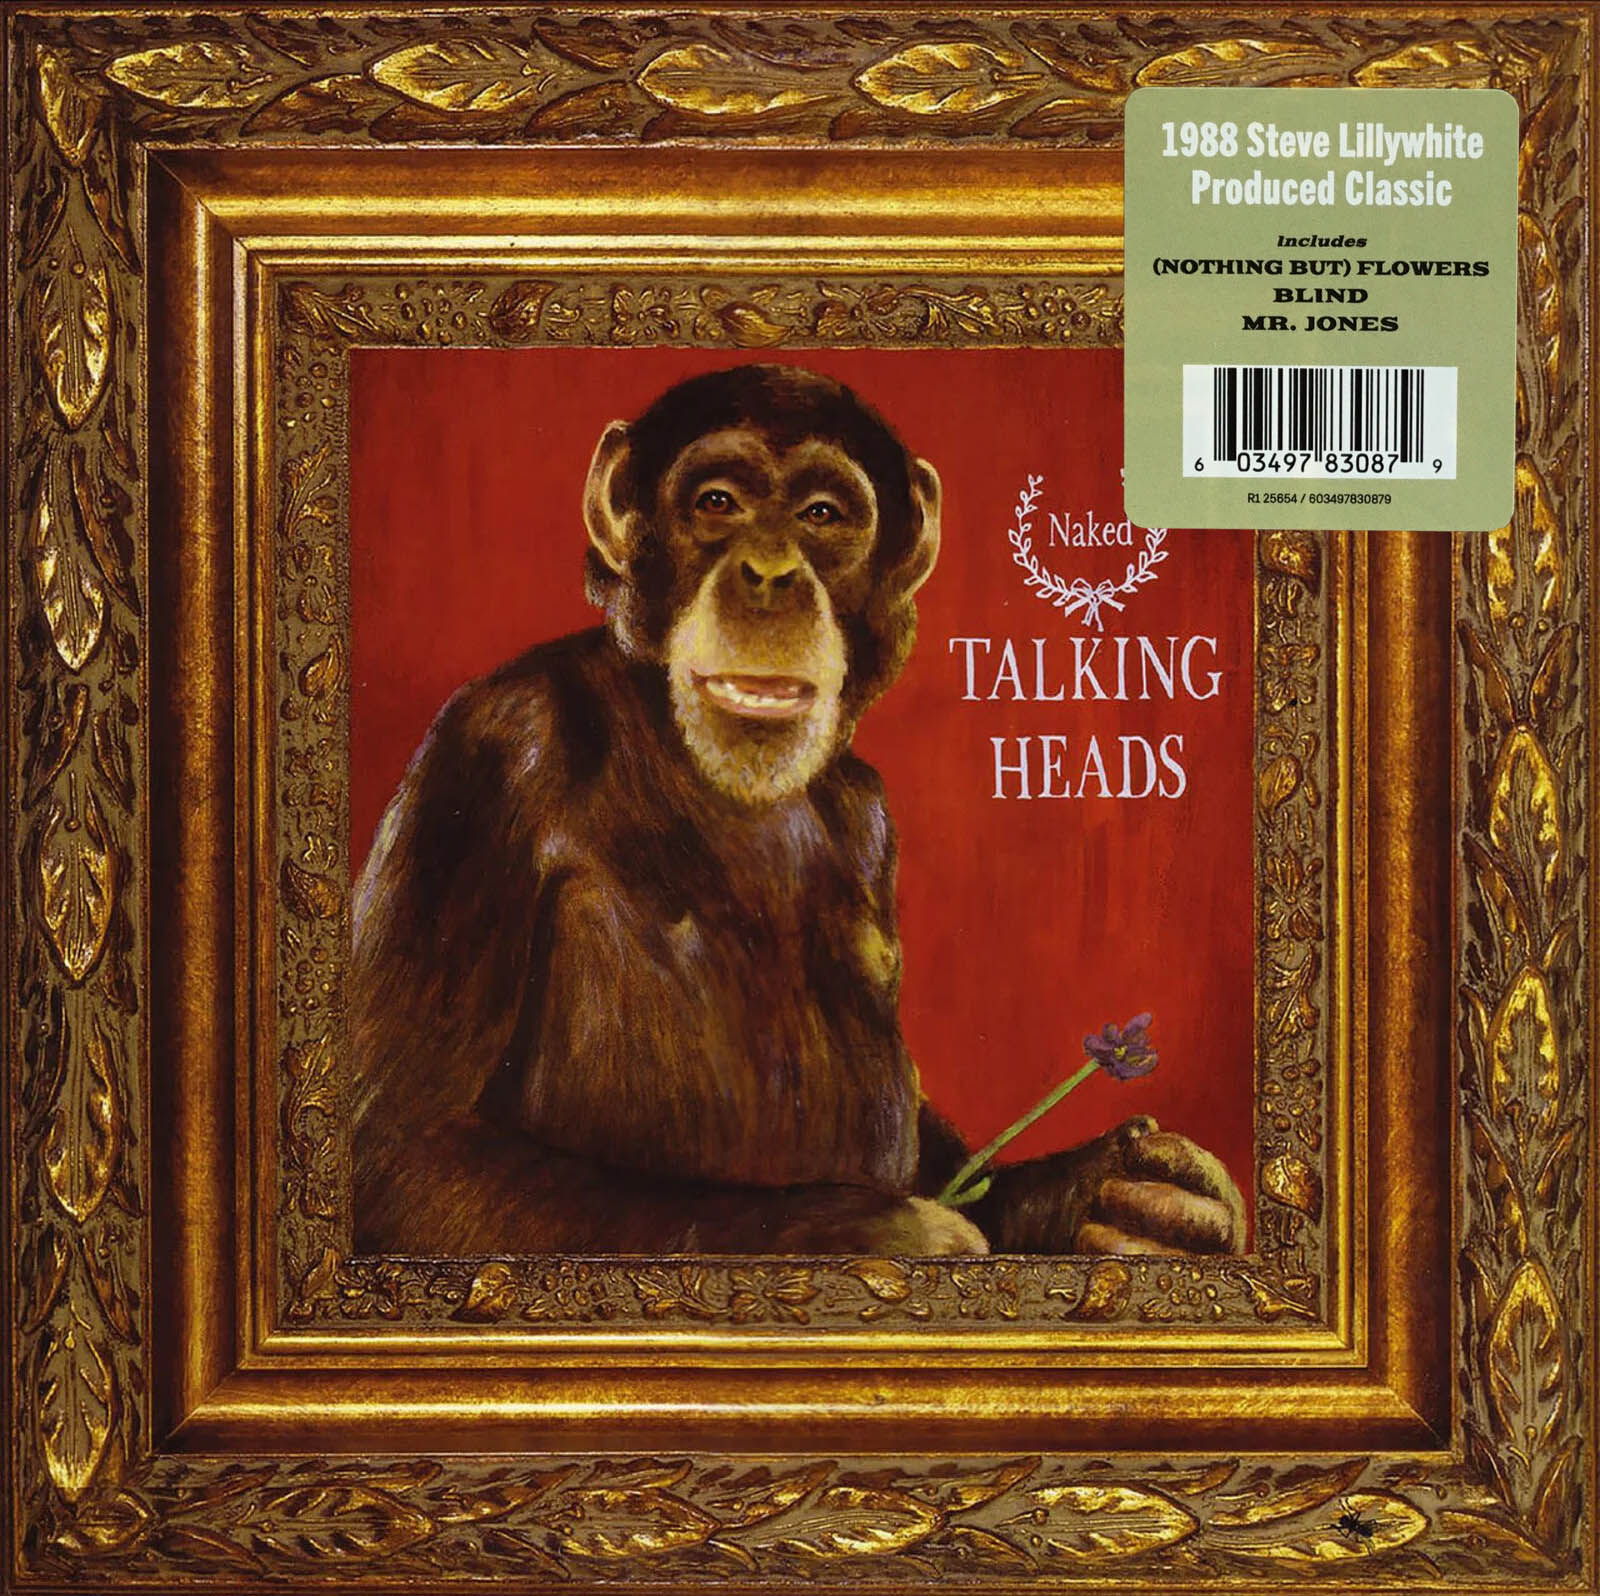 Talking Heads - Naked [Black Vinyl] (603497830879)